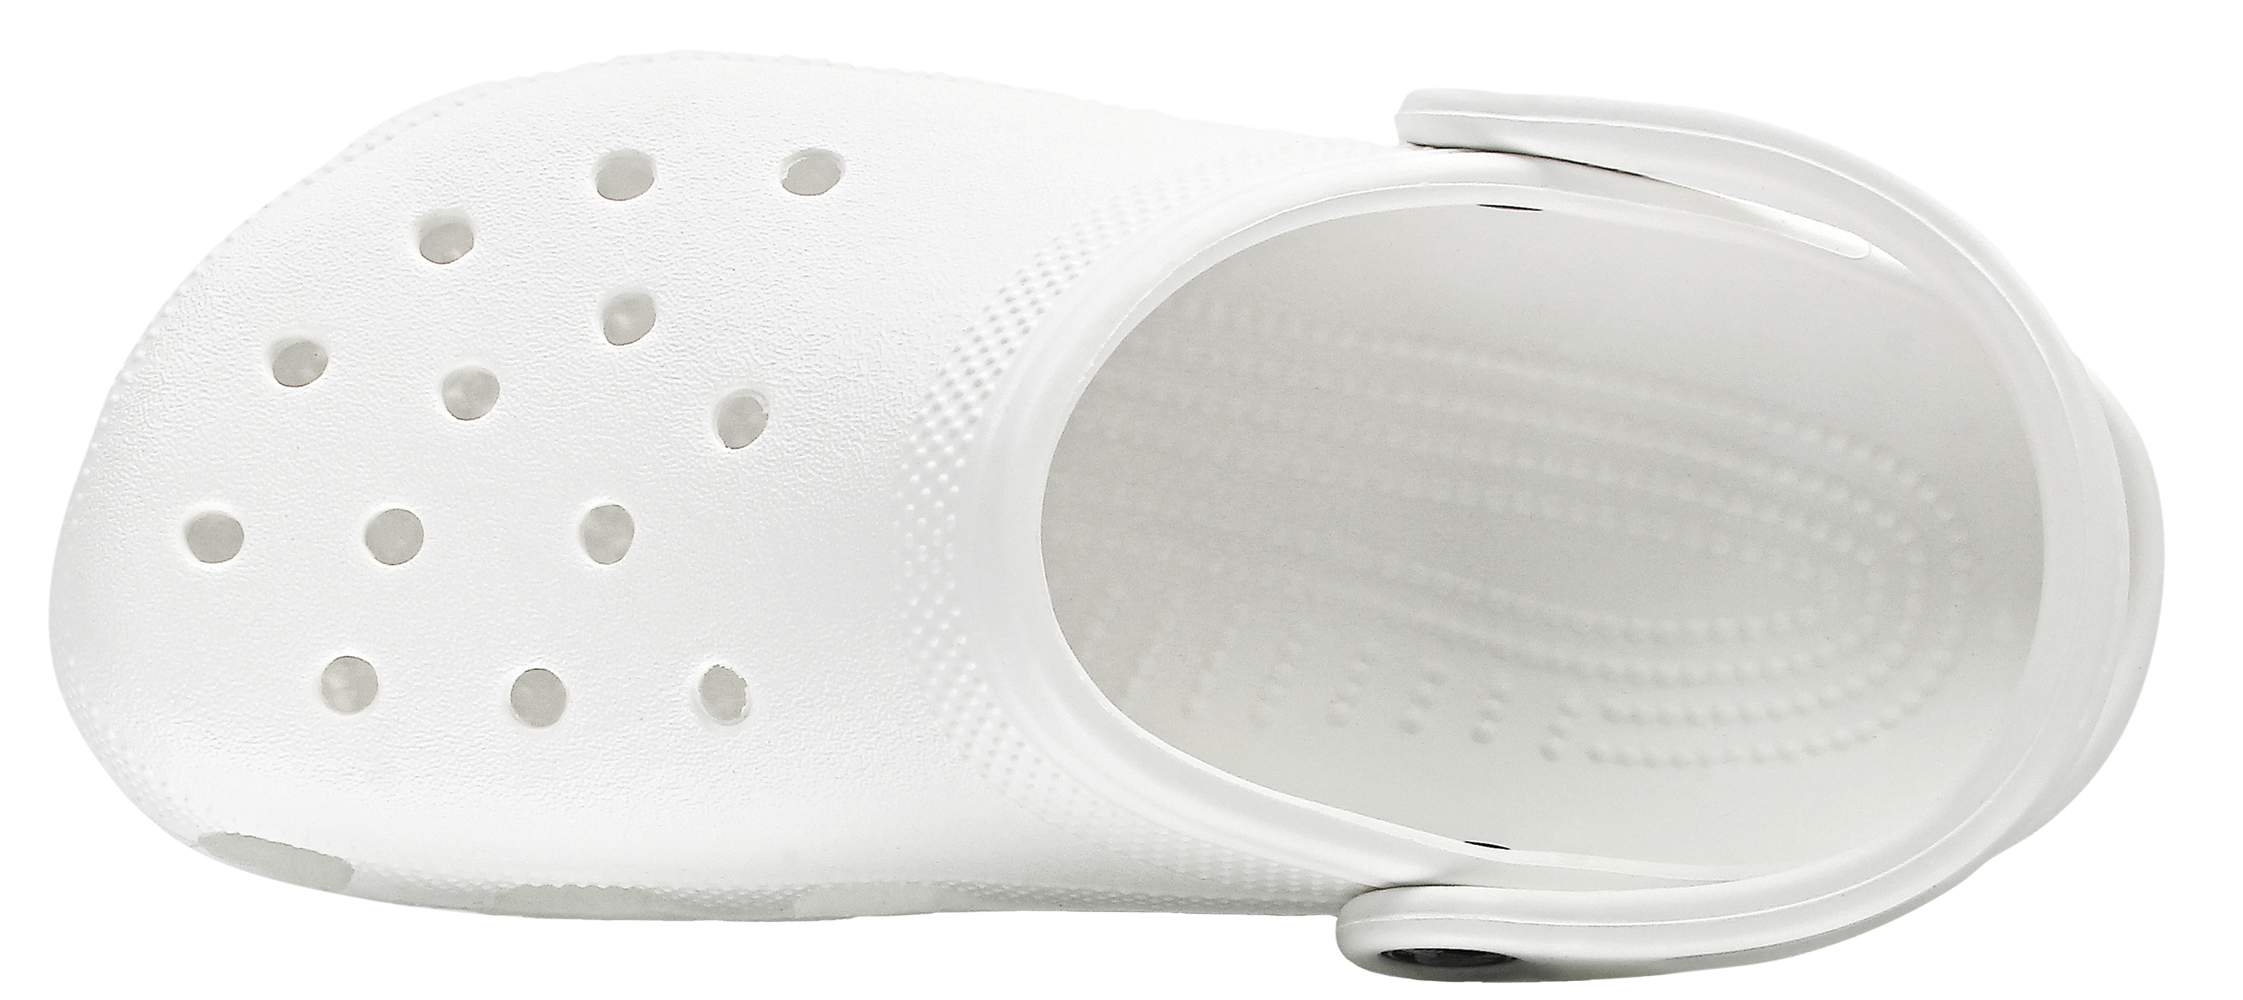 size 8 white crocs